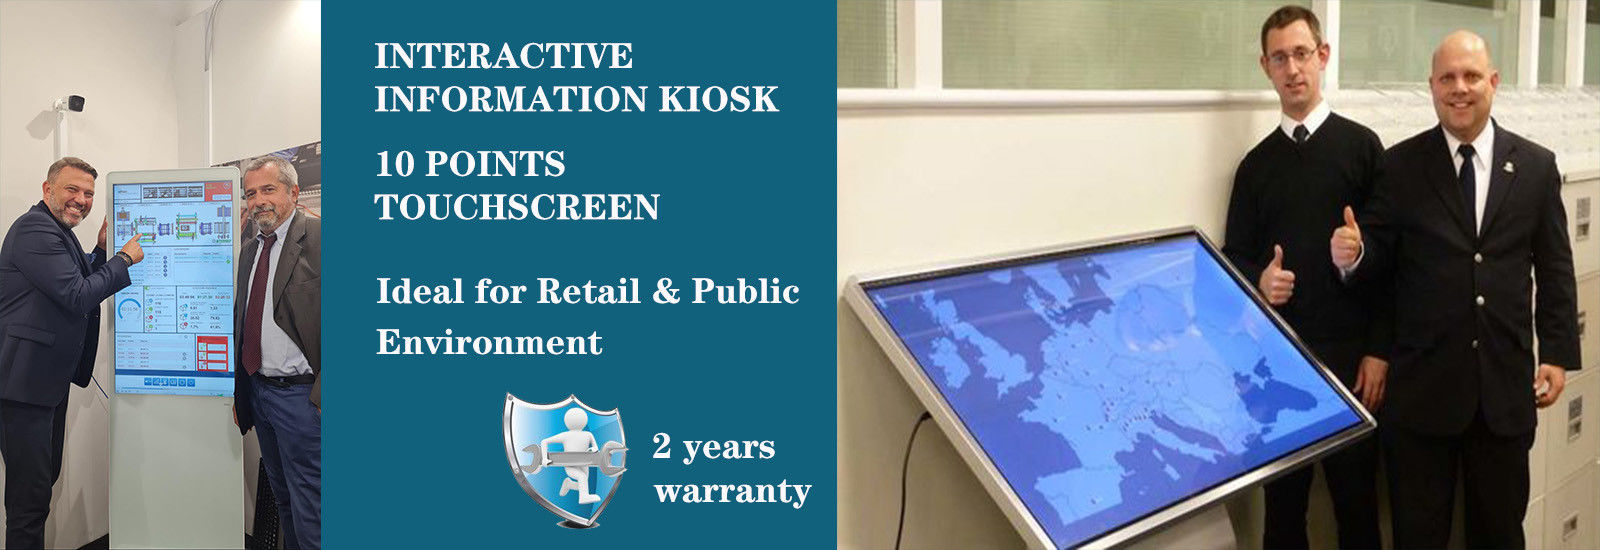 chất lượng Kiosk thông tin tương tác nhà máy sản xuất